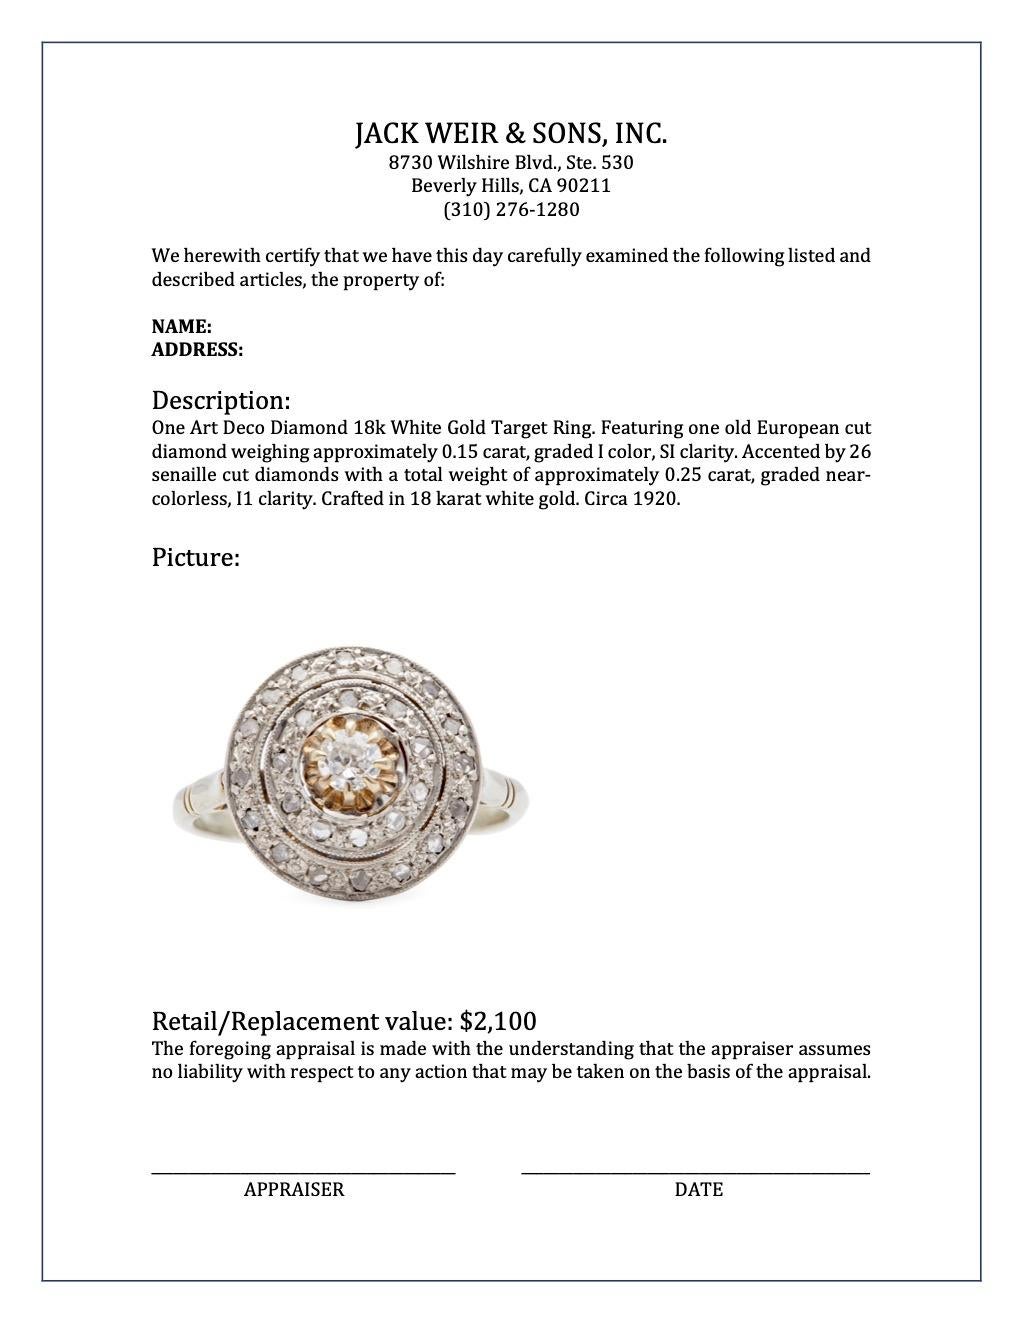 Art Deco Diamond 18k White Gold Target Ring 1